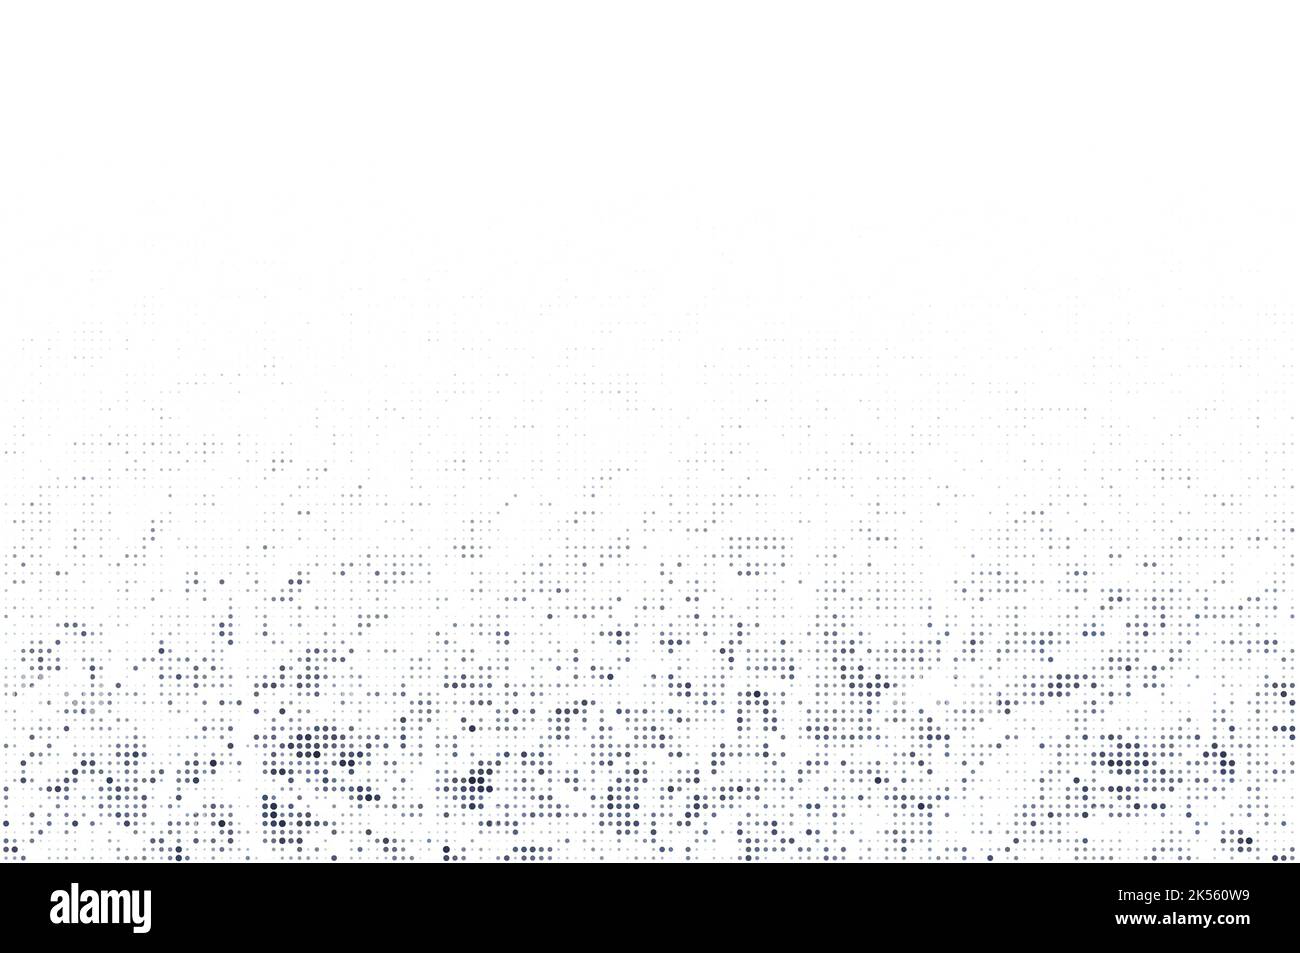 Abstraktes schwarz-graues Halbtonmuster auf weißem Hintergrund. Gepunktetes Muster für Vorlage, Broschüre, Visitenkarte, Webseite usw. Platz zum Kopieren. Stockfoto